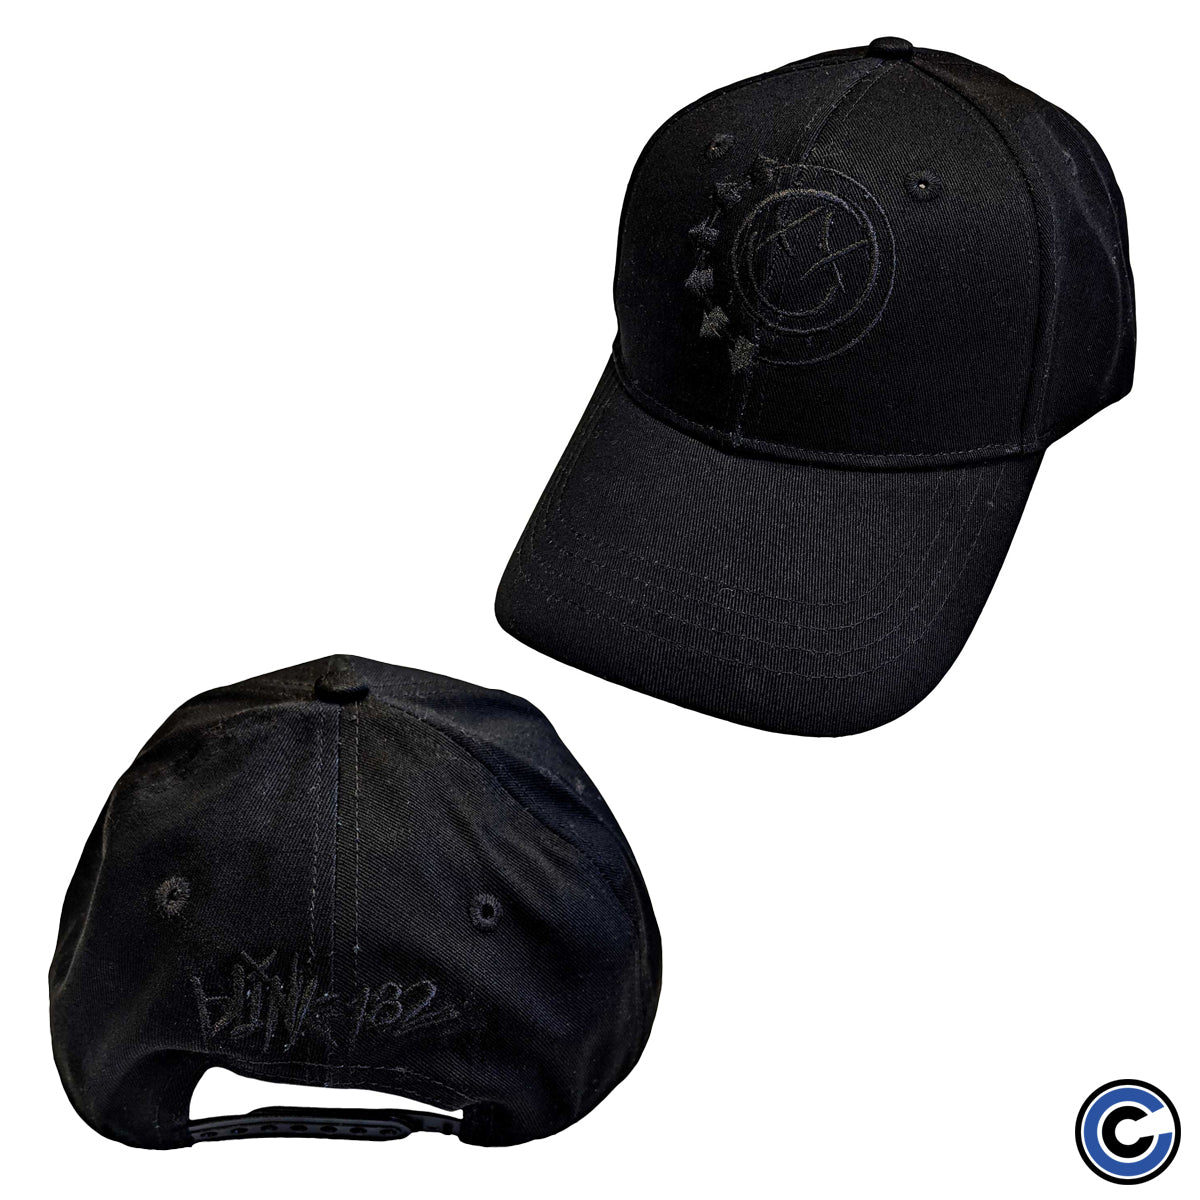 Blink-182 "Black Smiley" Hat